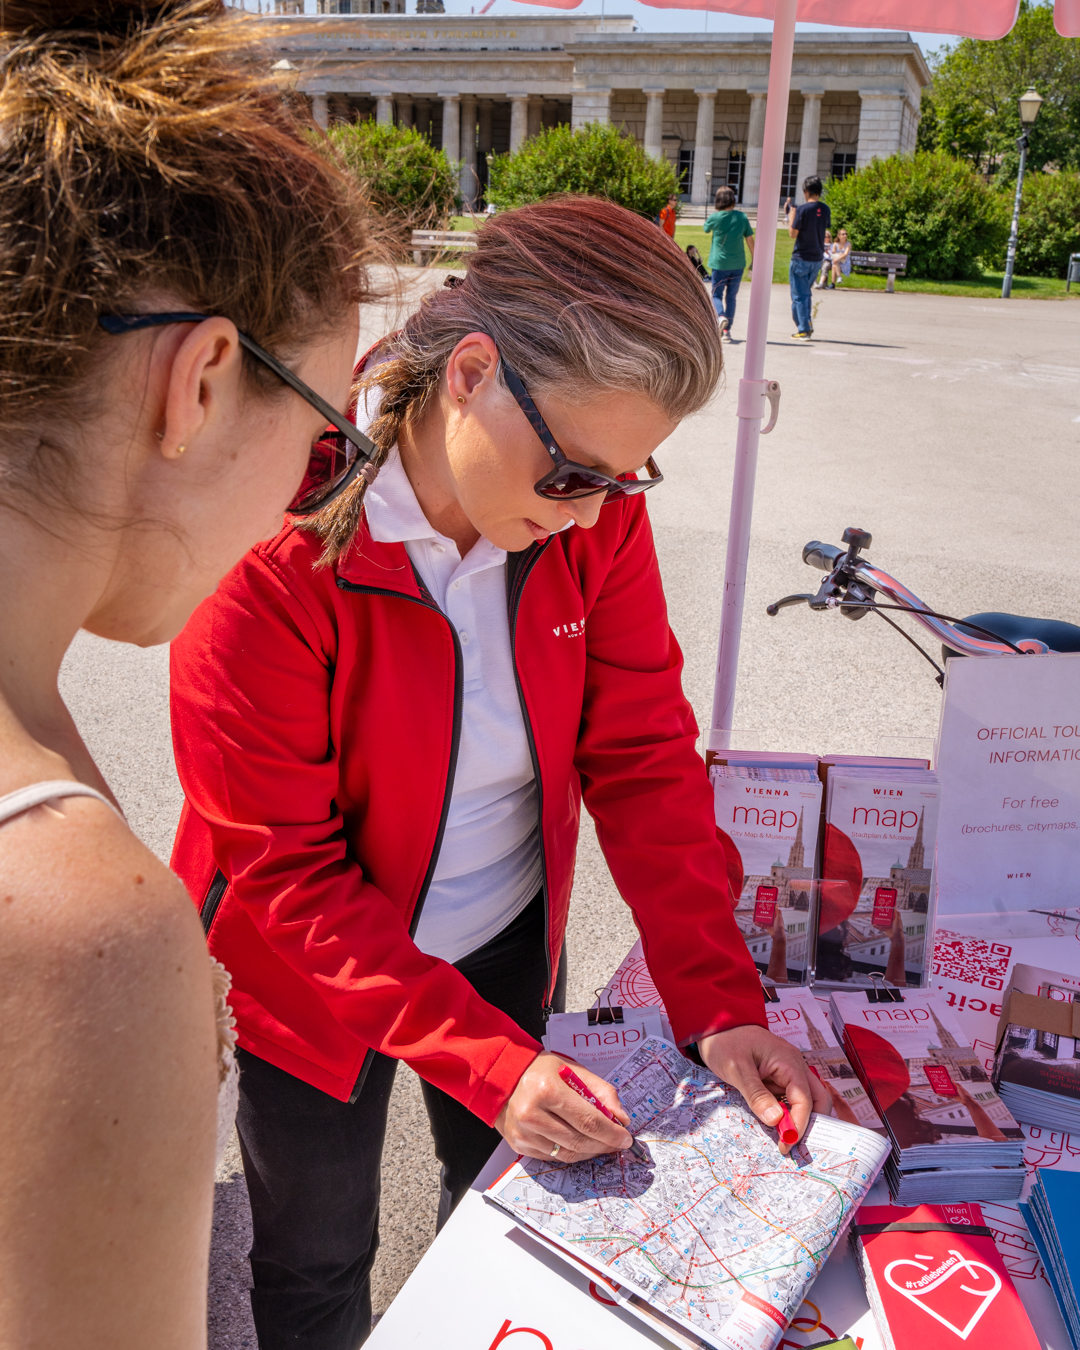 Servicio de información turística móvil con bicicleta de carga, una trabajadora le muestra algo a una clienta en el mapa de la ciudad